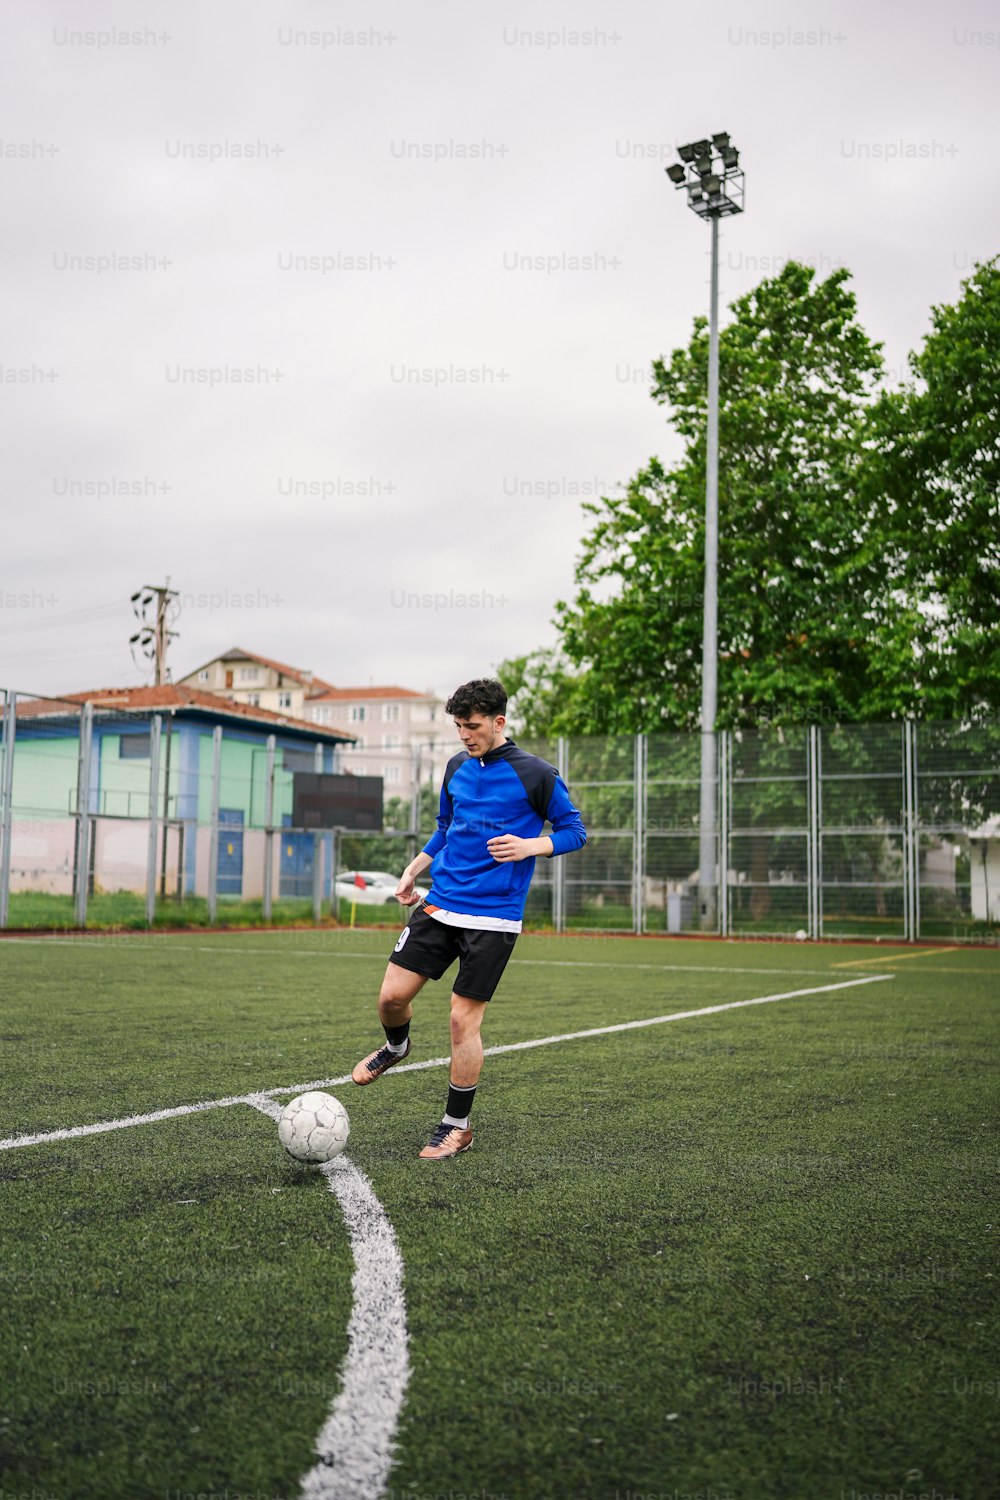 Un jeune homme donnant un coup de pied dans un ballon de soccer sur un terrain